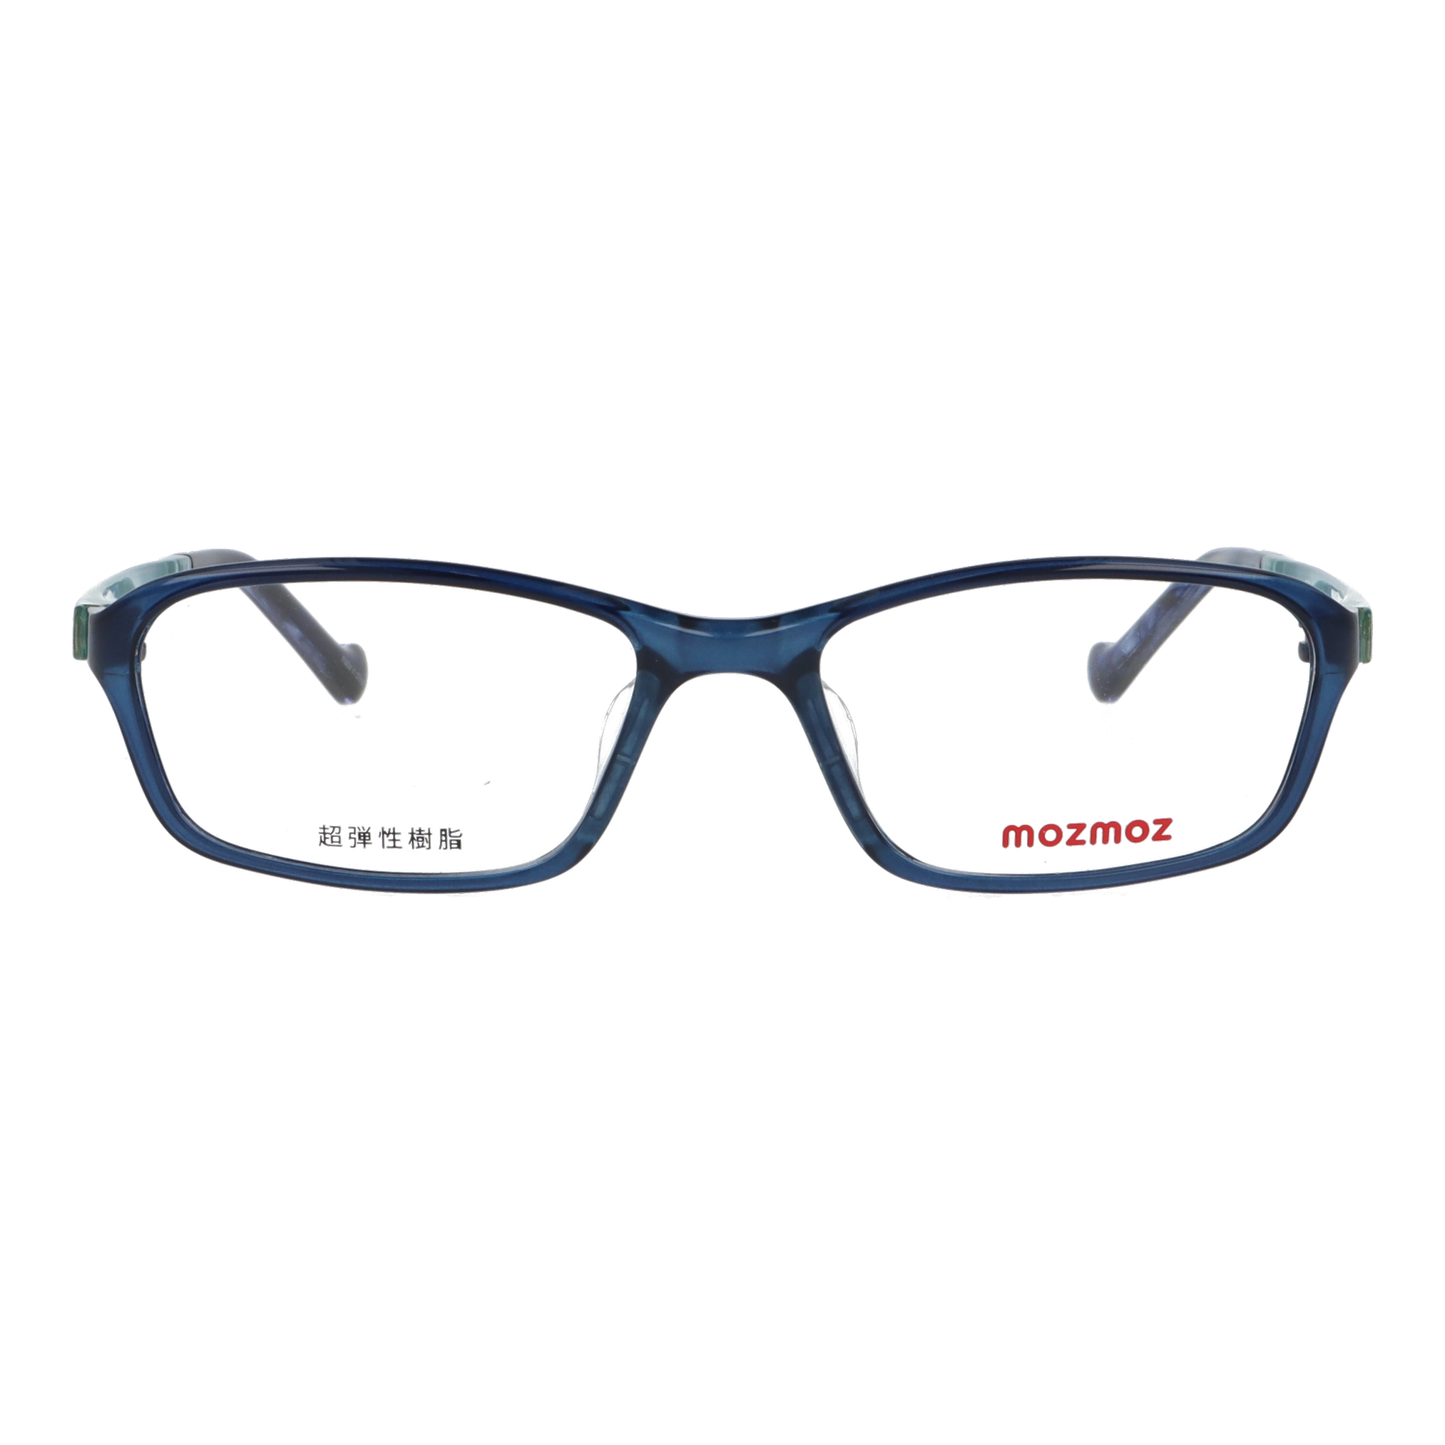 正面から見たアイウェア【軽量】こどもメガネ mo3003のカラーネイビー/ブルー